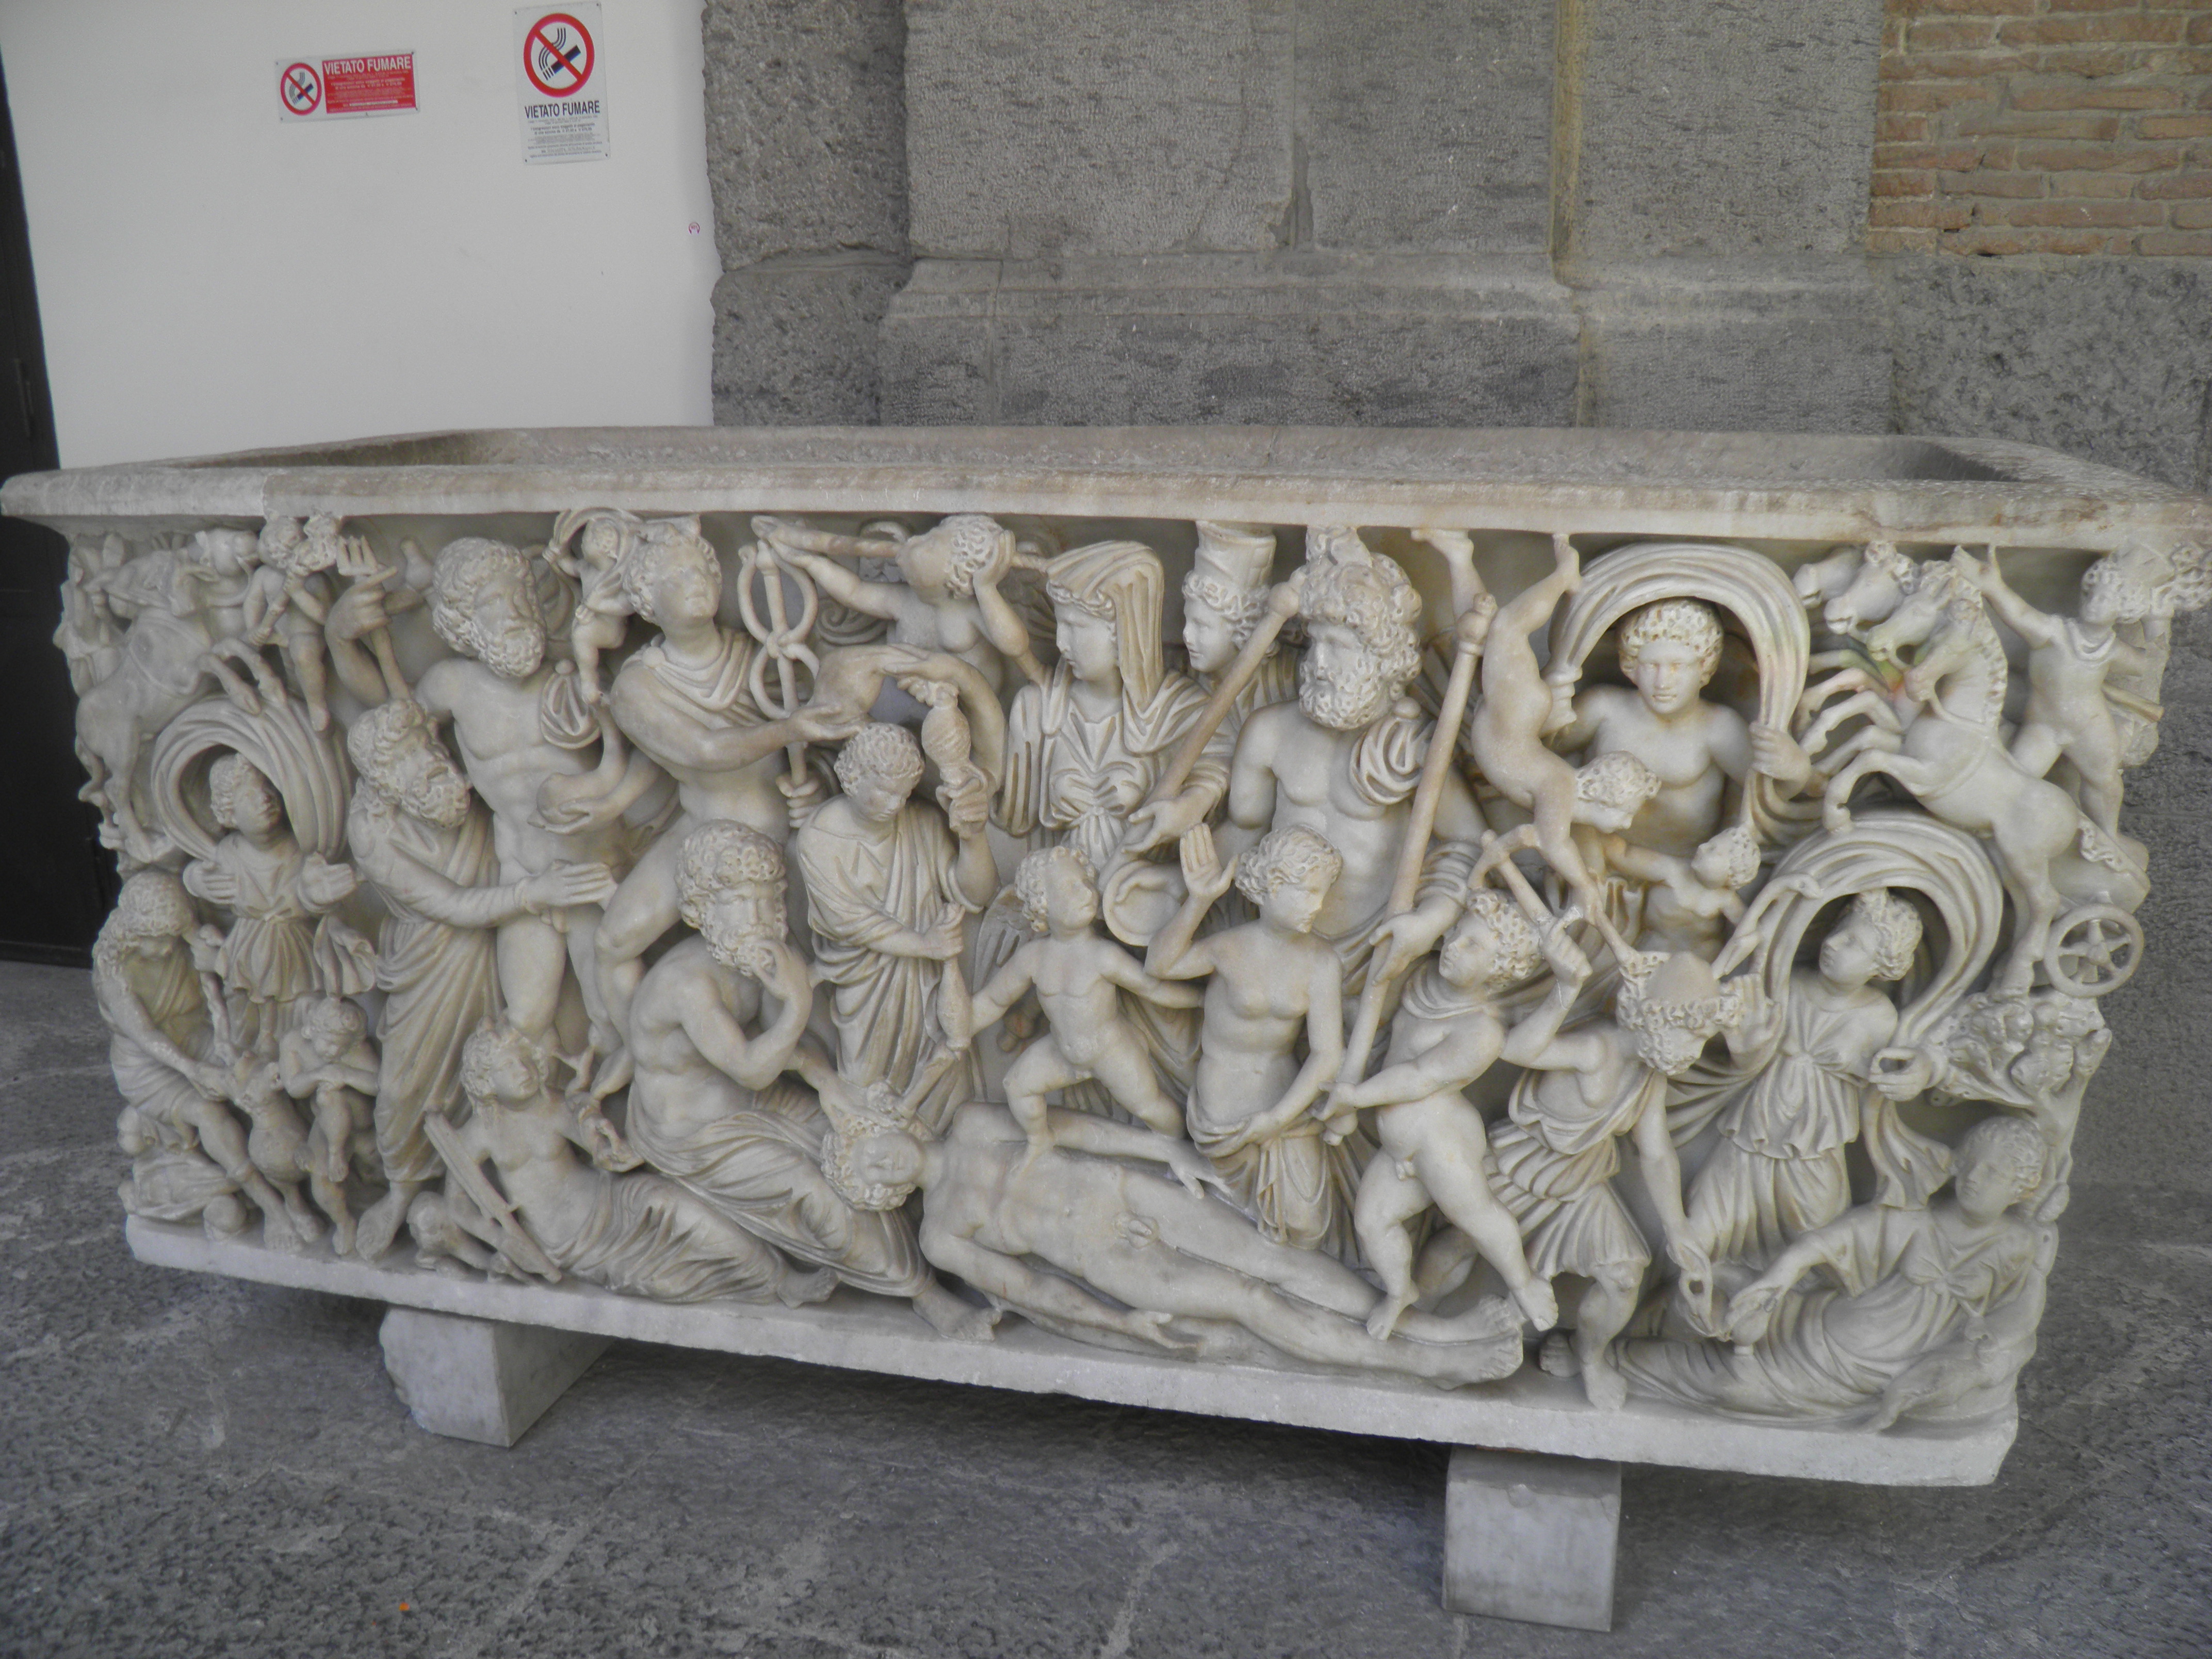 File:Sarkofag etruski z muzeum w Neapolu.jpg - Wikimedia Commons